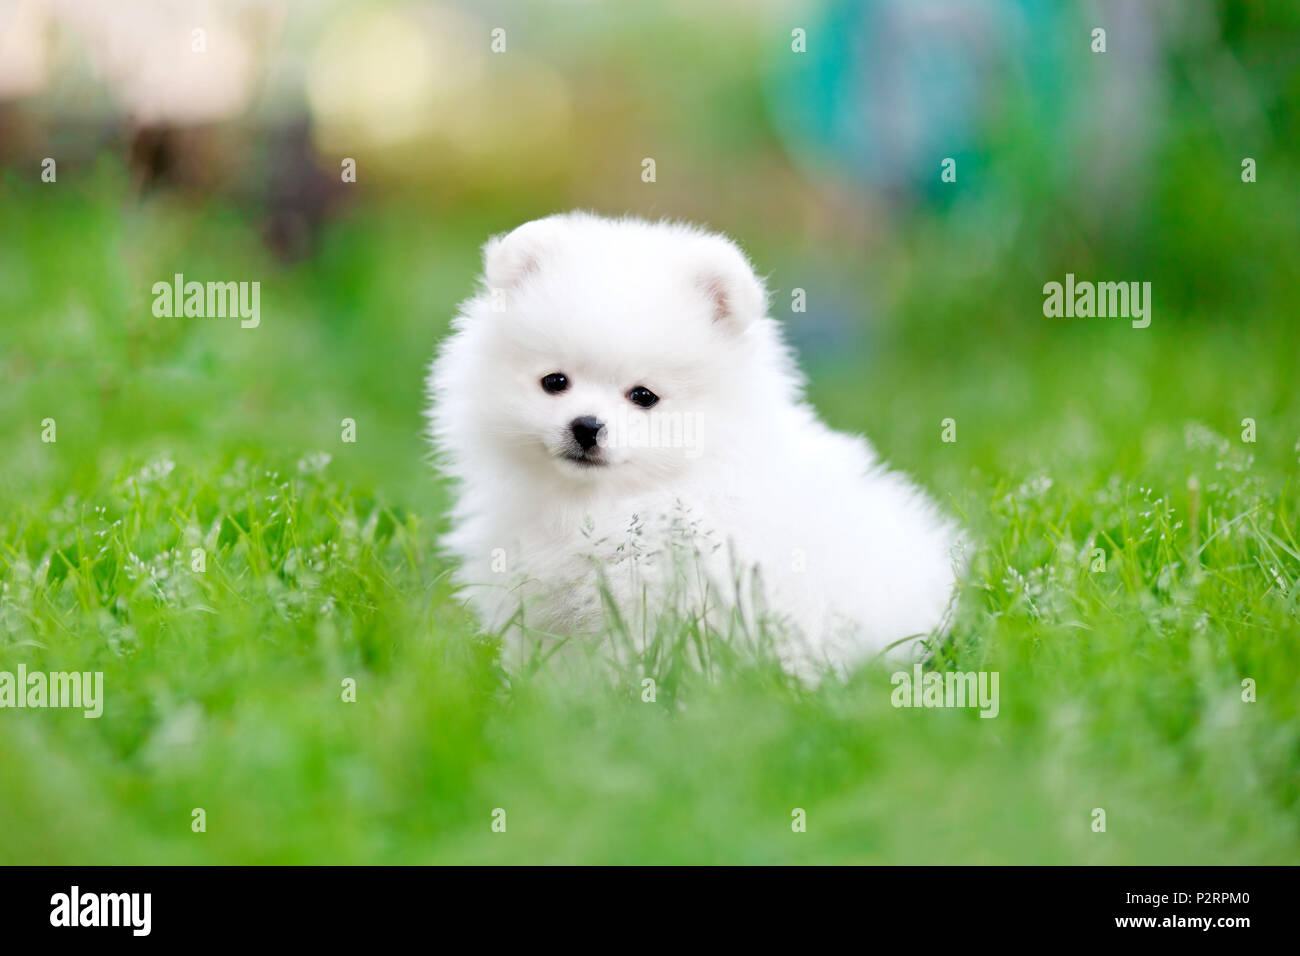 Weiß pomeranian spitz Welpen im Gras sitzen Stockfotografie Alamy